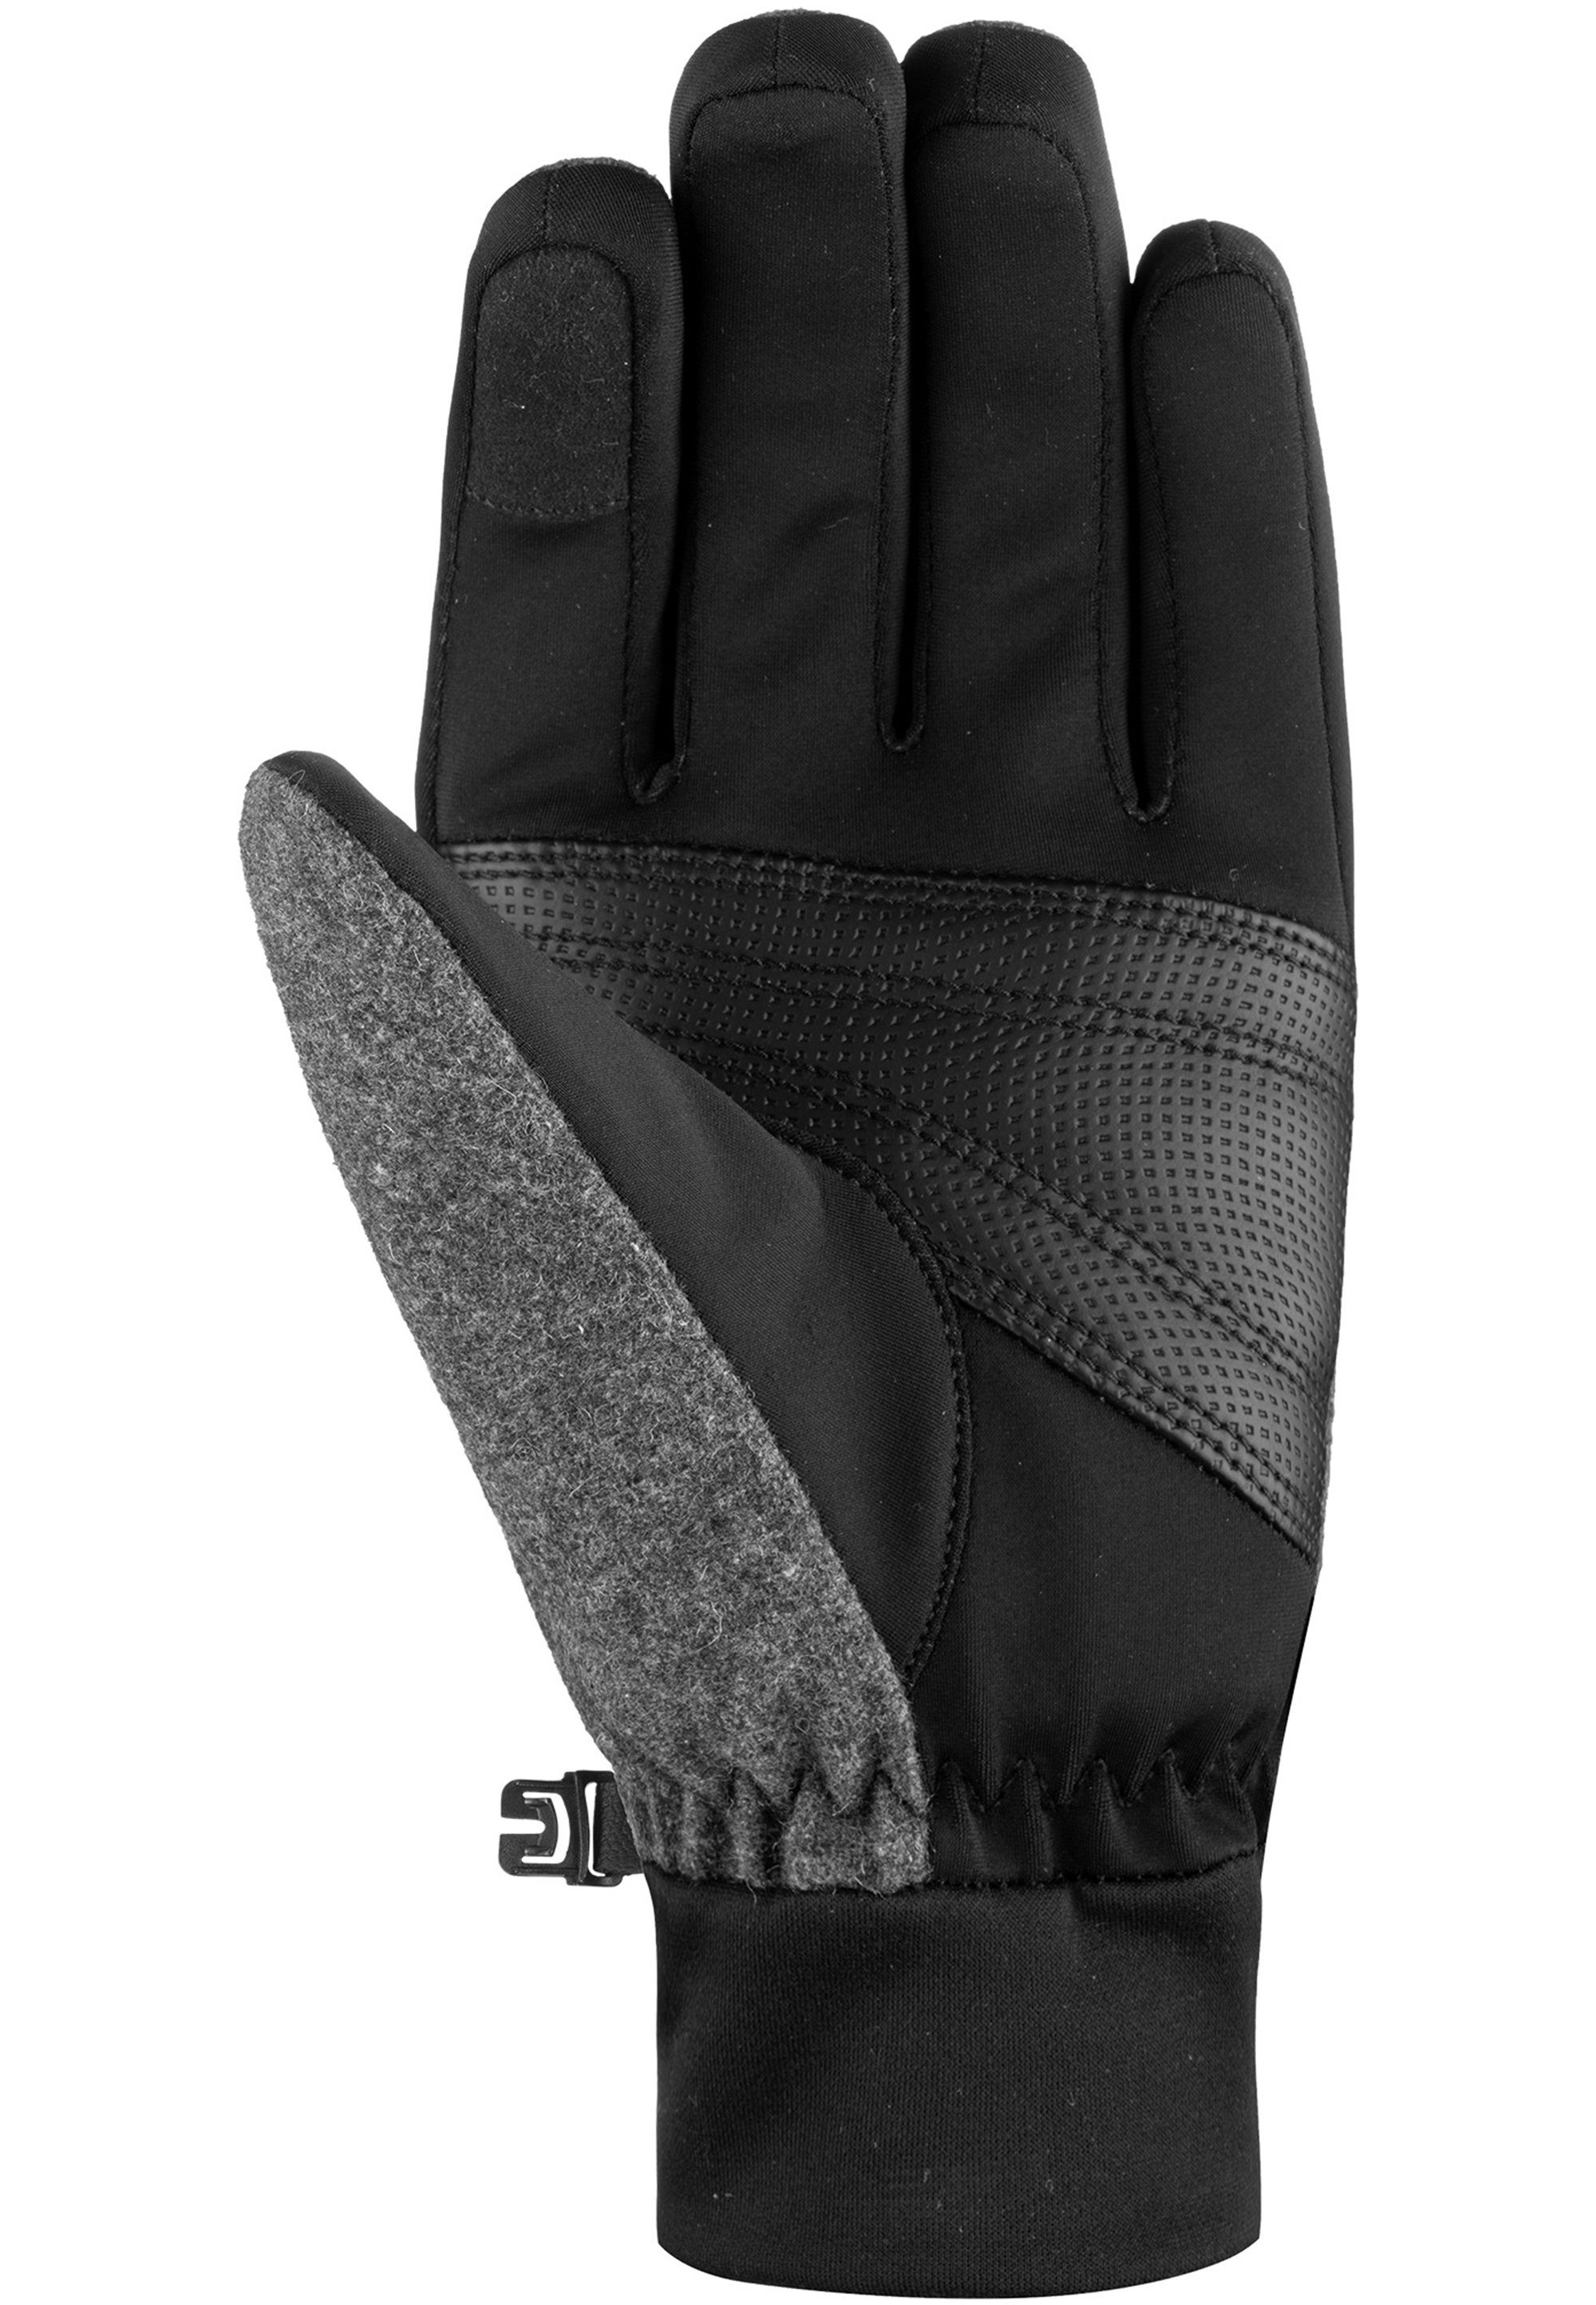 Reusch Skihandschuhe Saskia Touch-tec mit schwarz-grau verspielten Design-Elementen